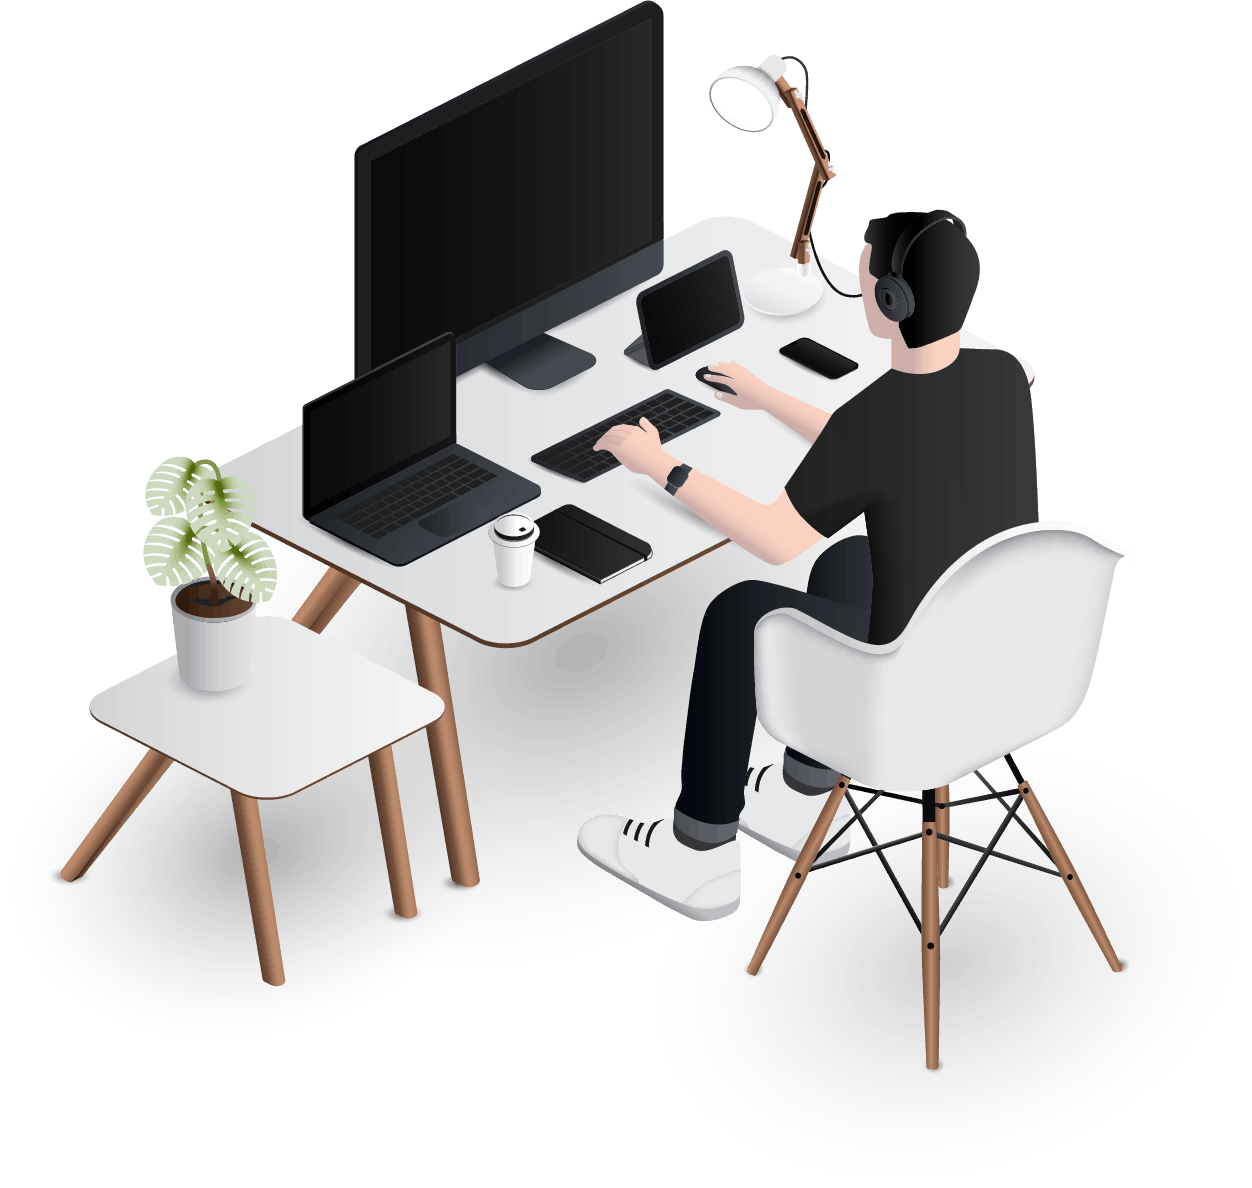 design desk ilustration